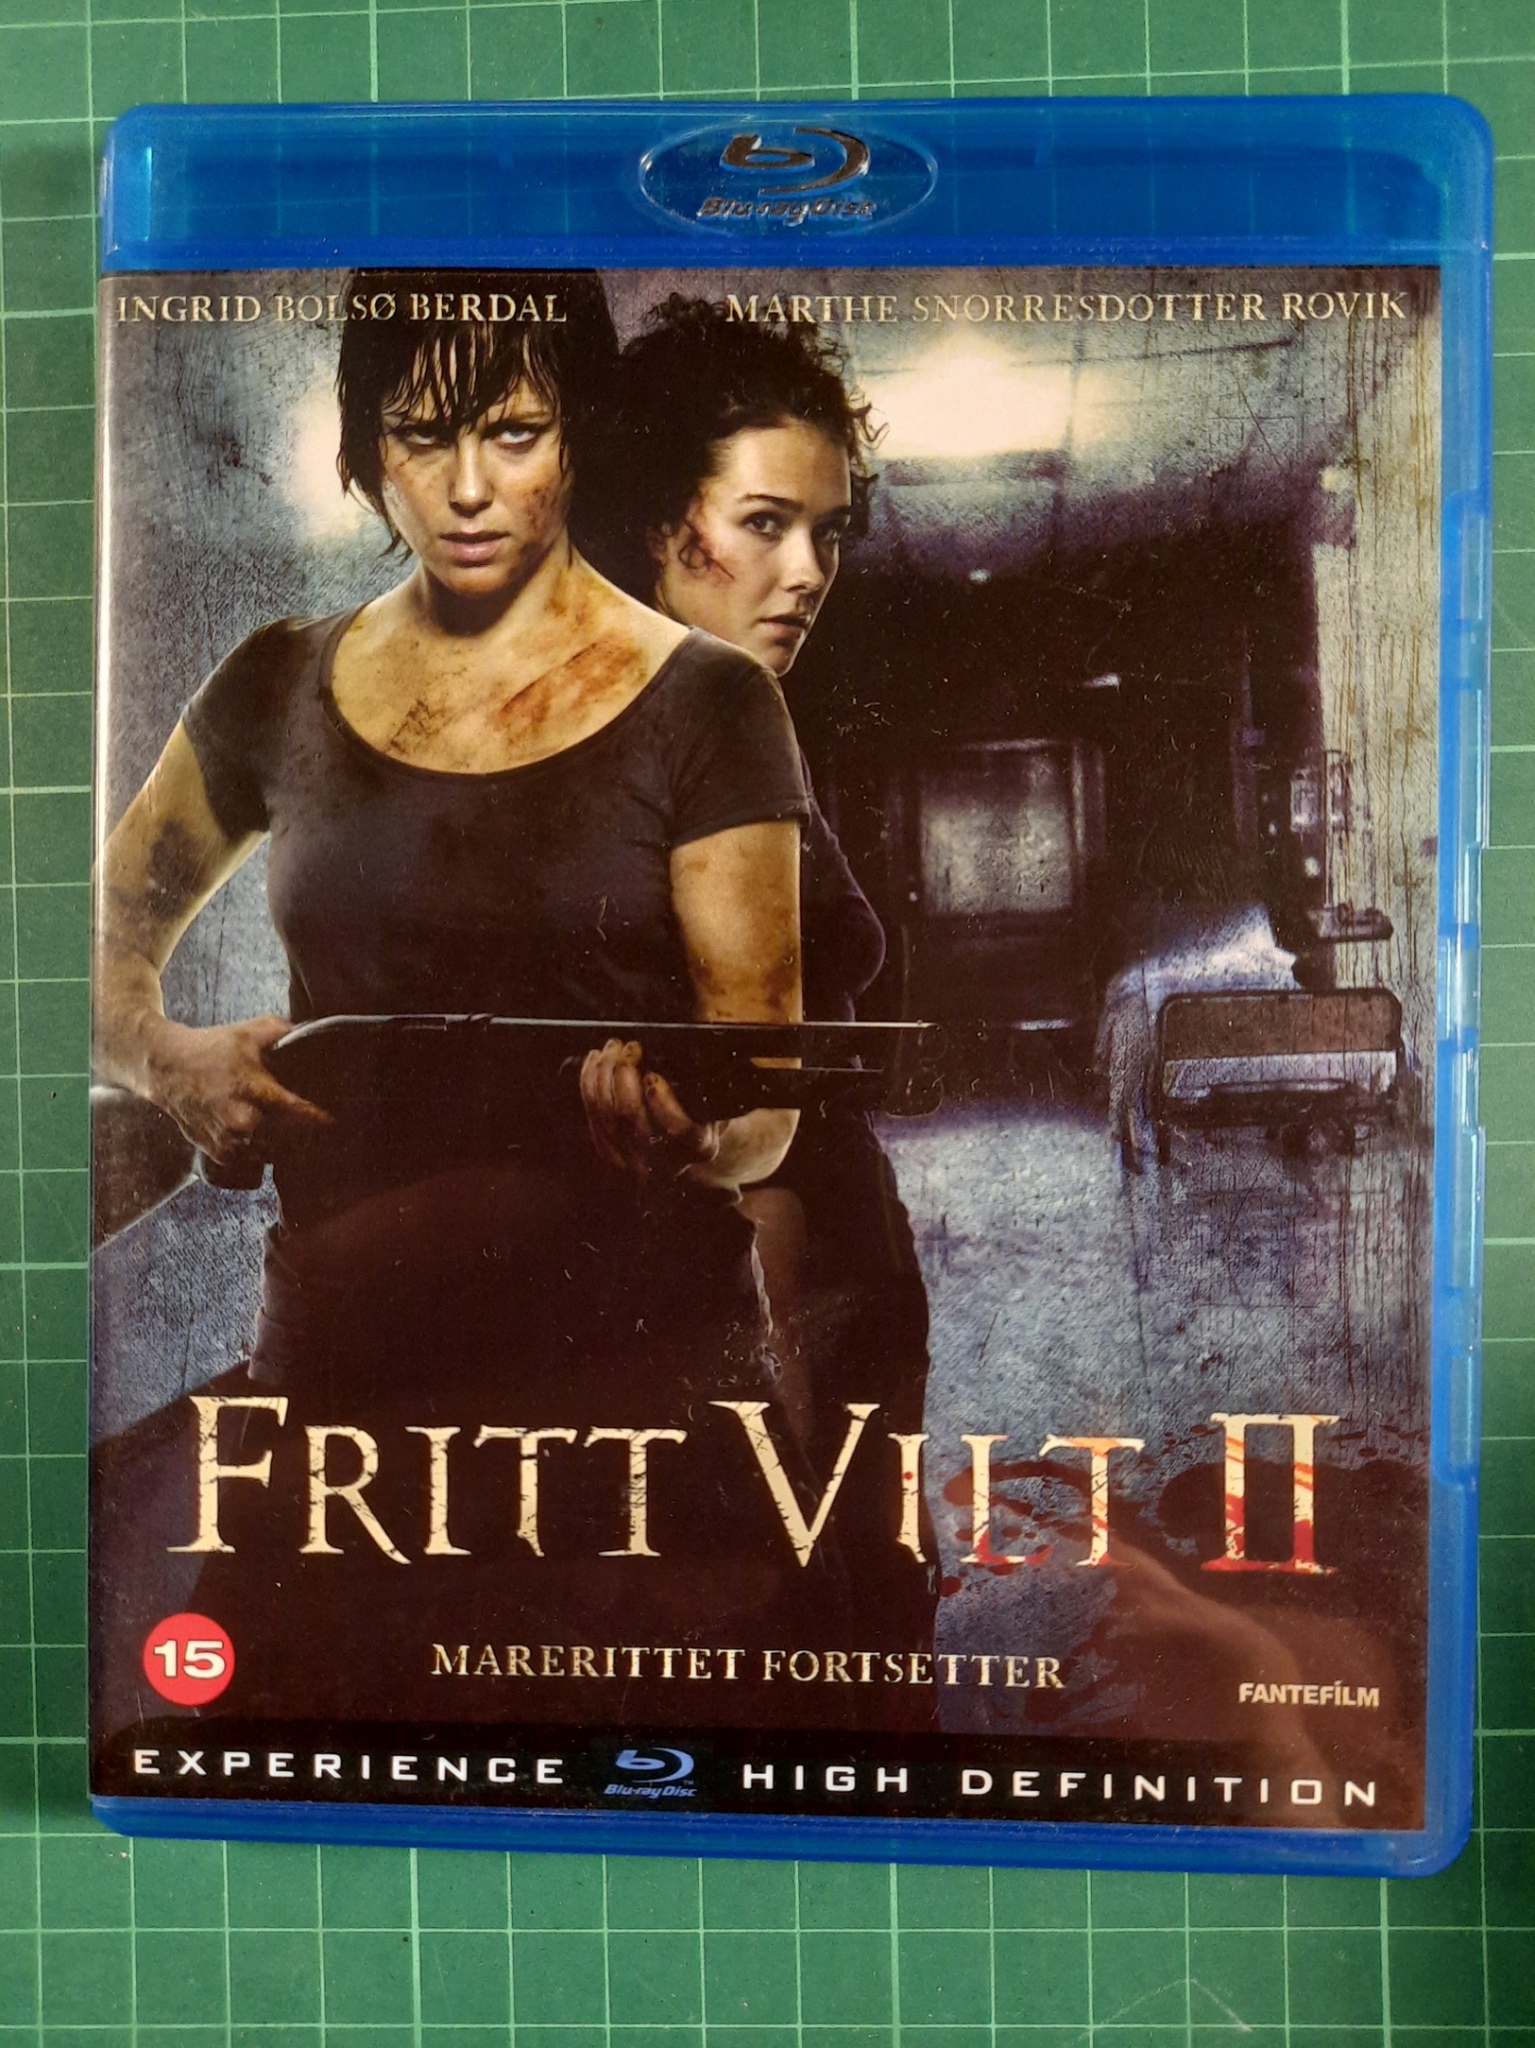 Blu-ray : Fritt vilt II